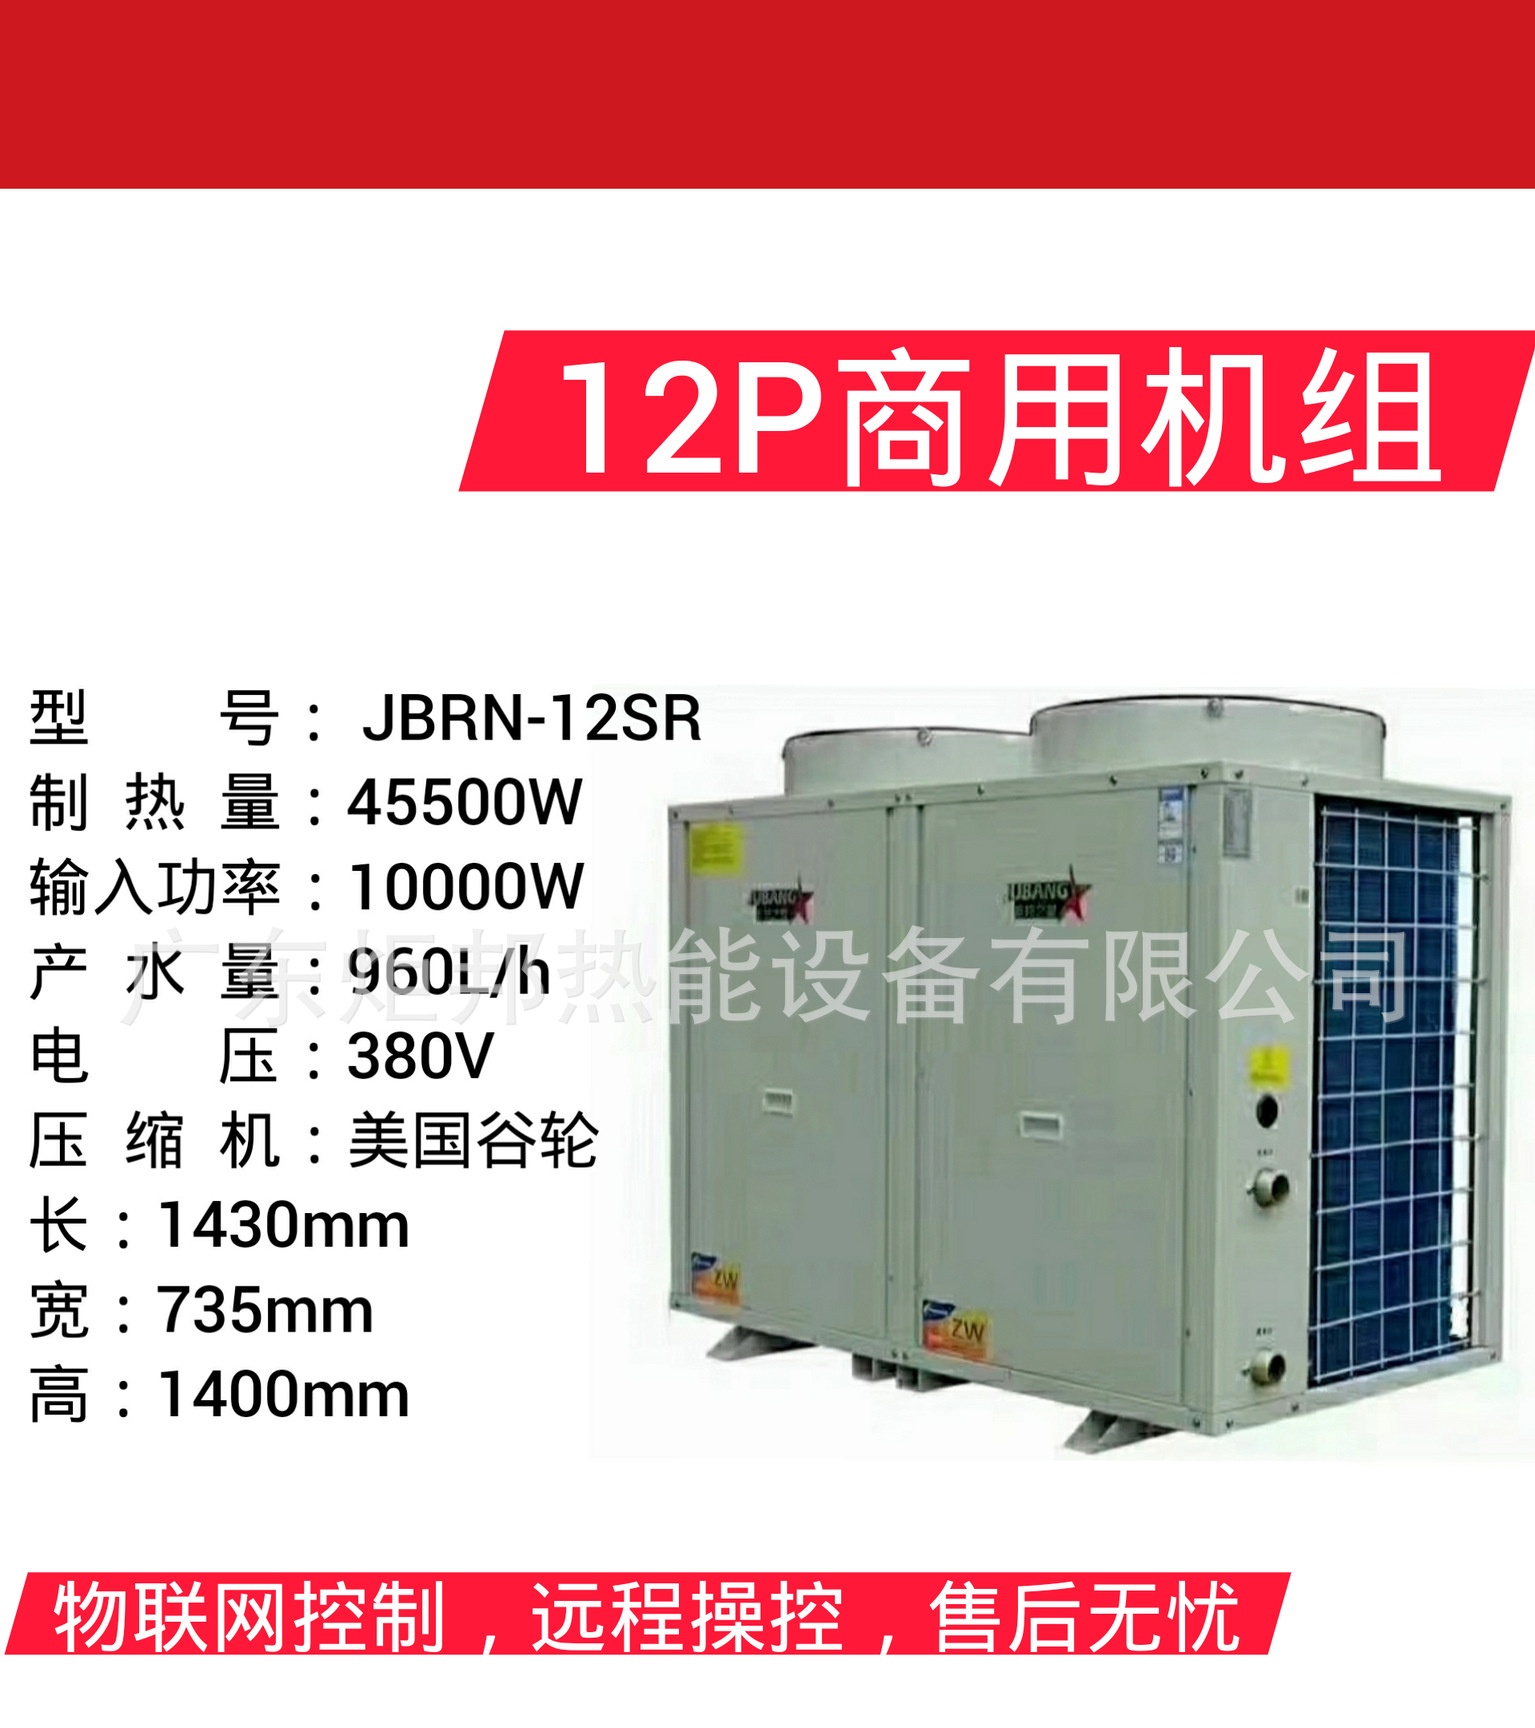 大型商用节能空气能热水器商用空气能热水器JBRN-12SR热泵热水器